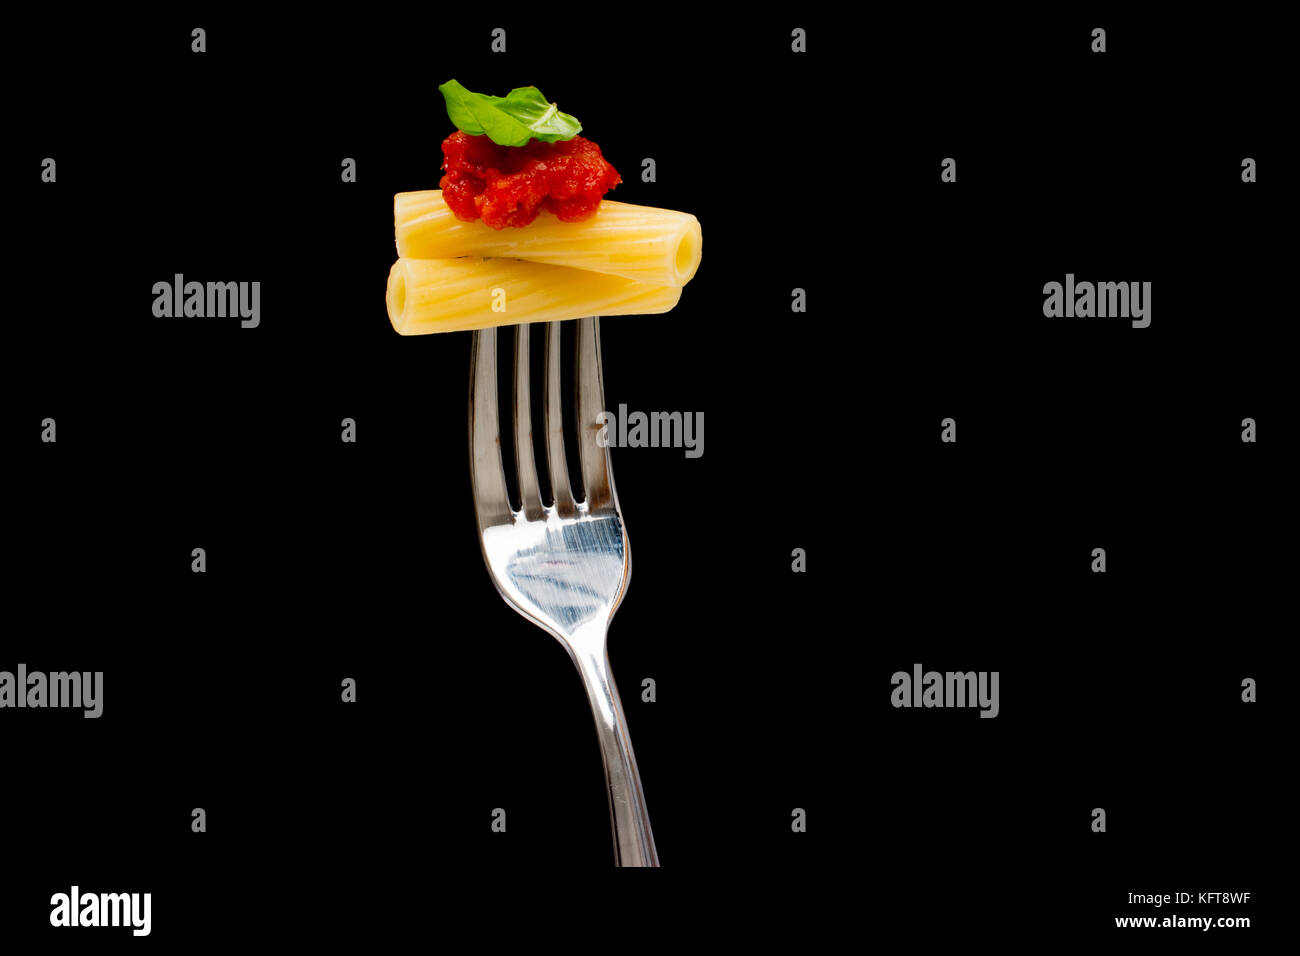 La pasta in sfondo nero. rigatoni, pomodoro e basilico sulla forcella. cucina italiana concept Foto Stock